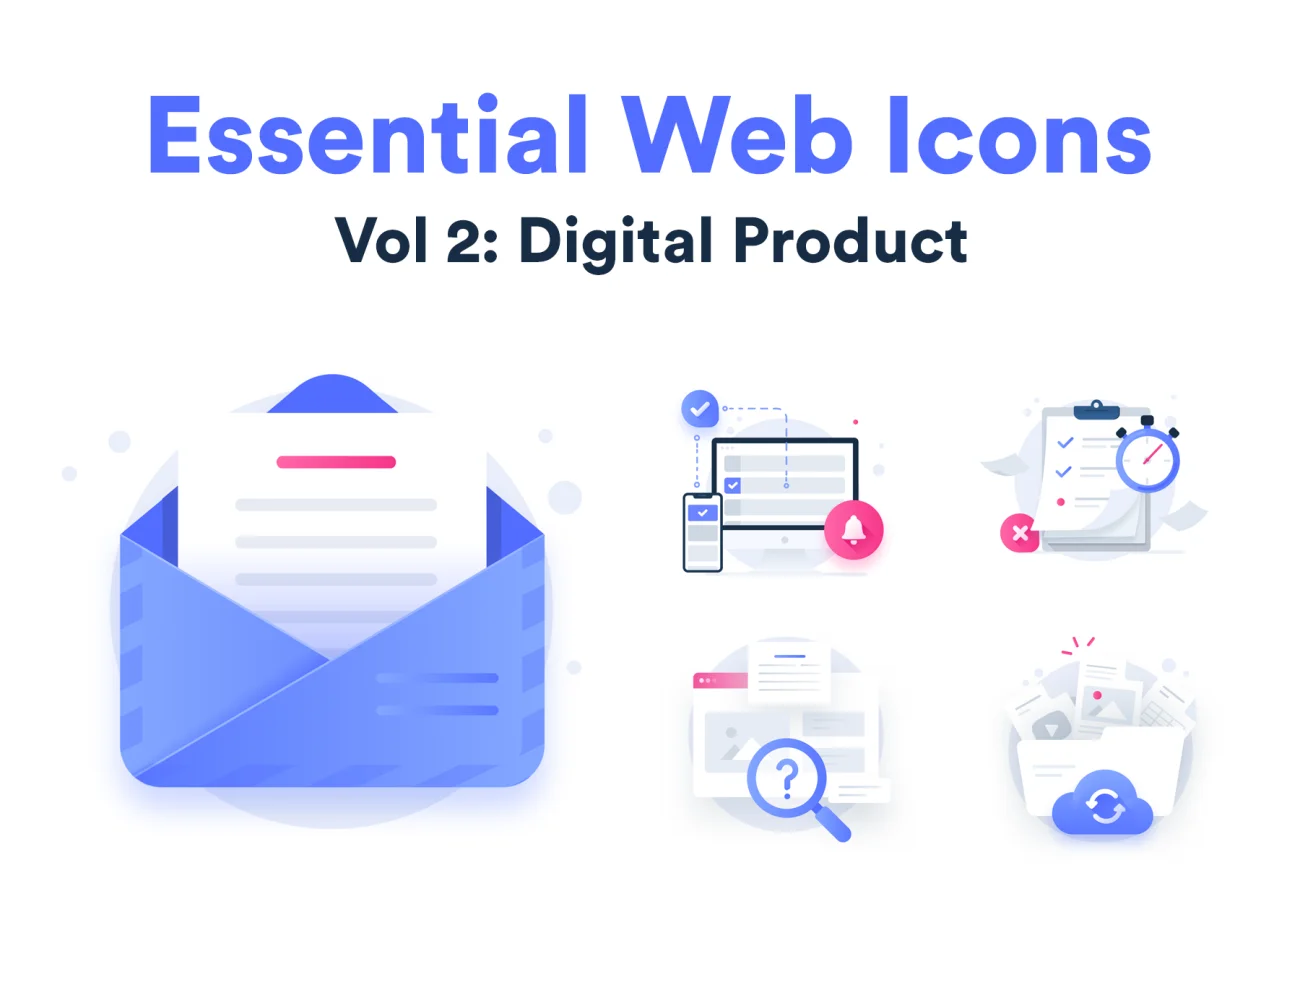 150个SaaS应用网站数字产品常用必备图标合集 Essential Web Icons Volume 2插图1